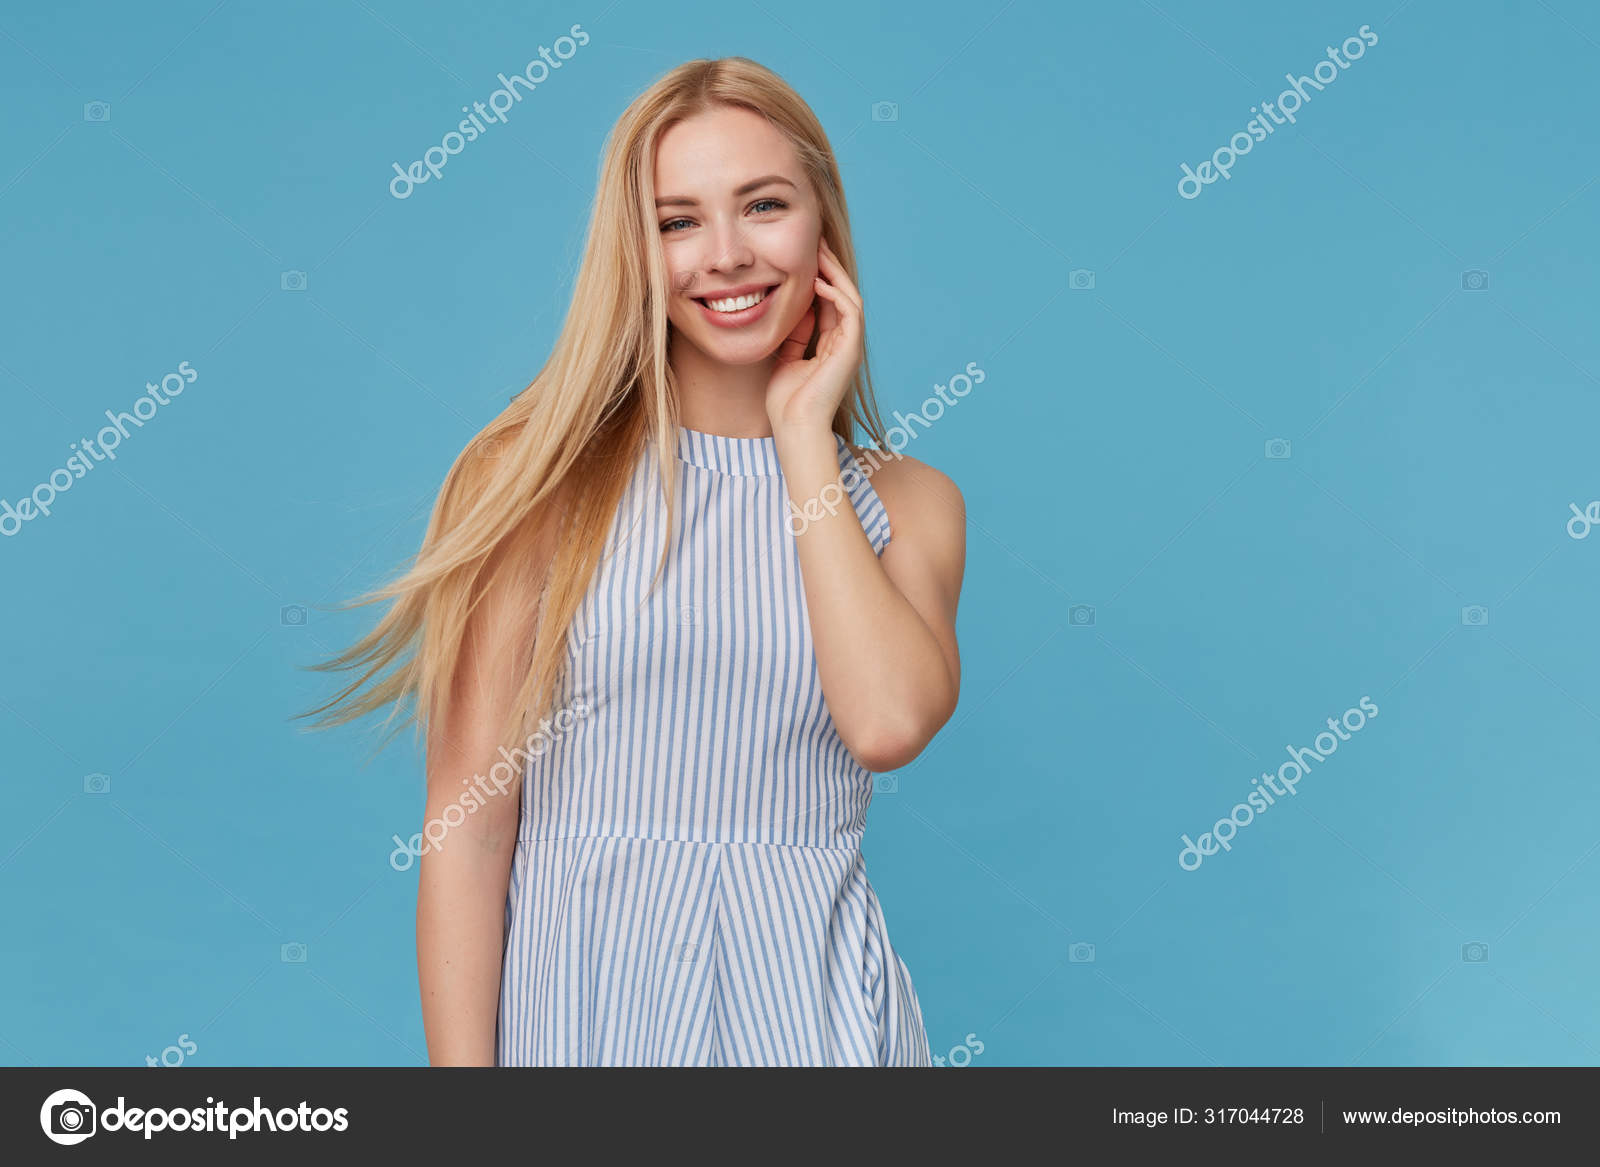 Woman tucking hair behind ear